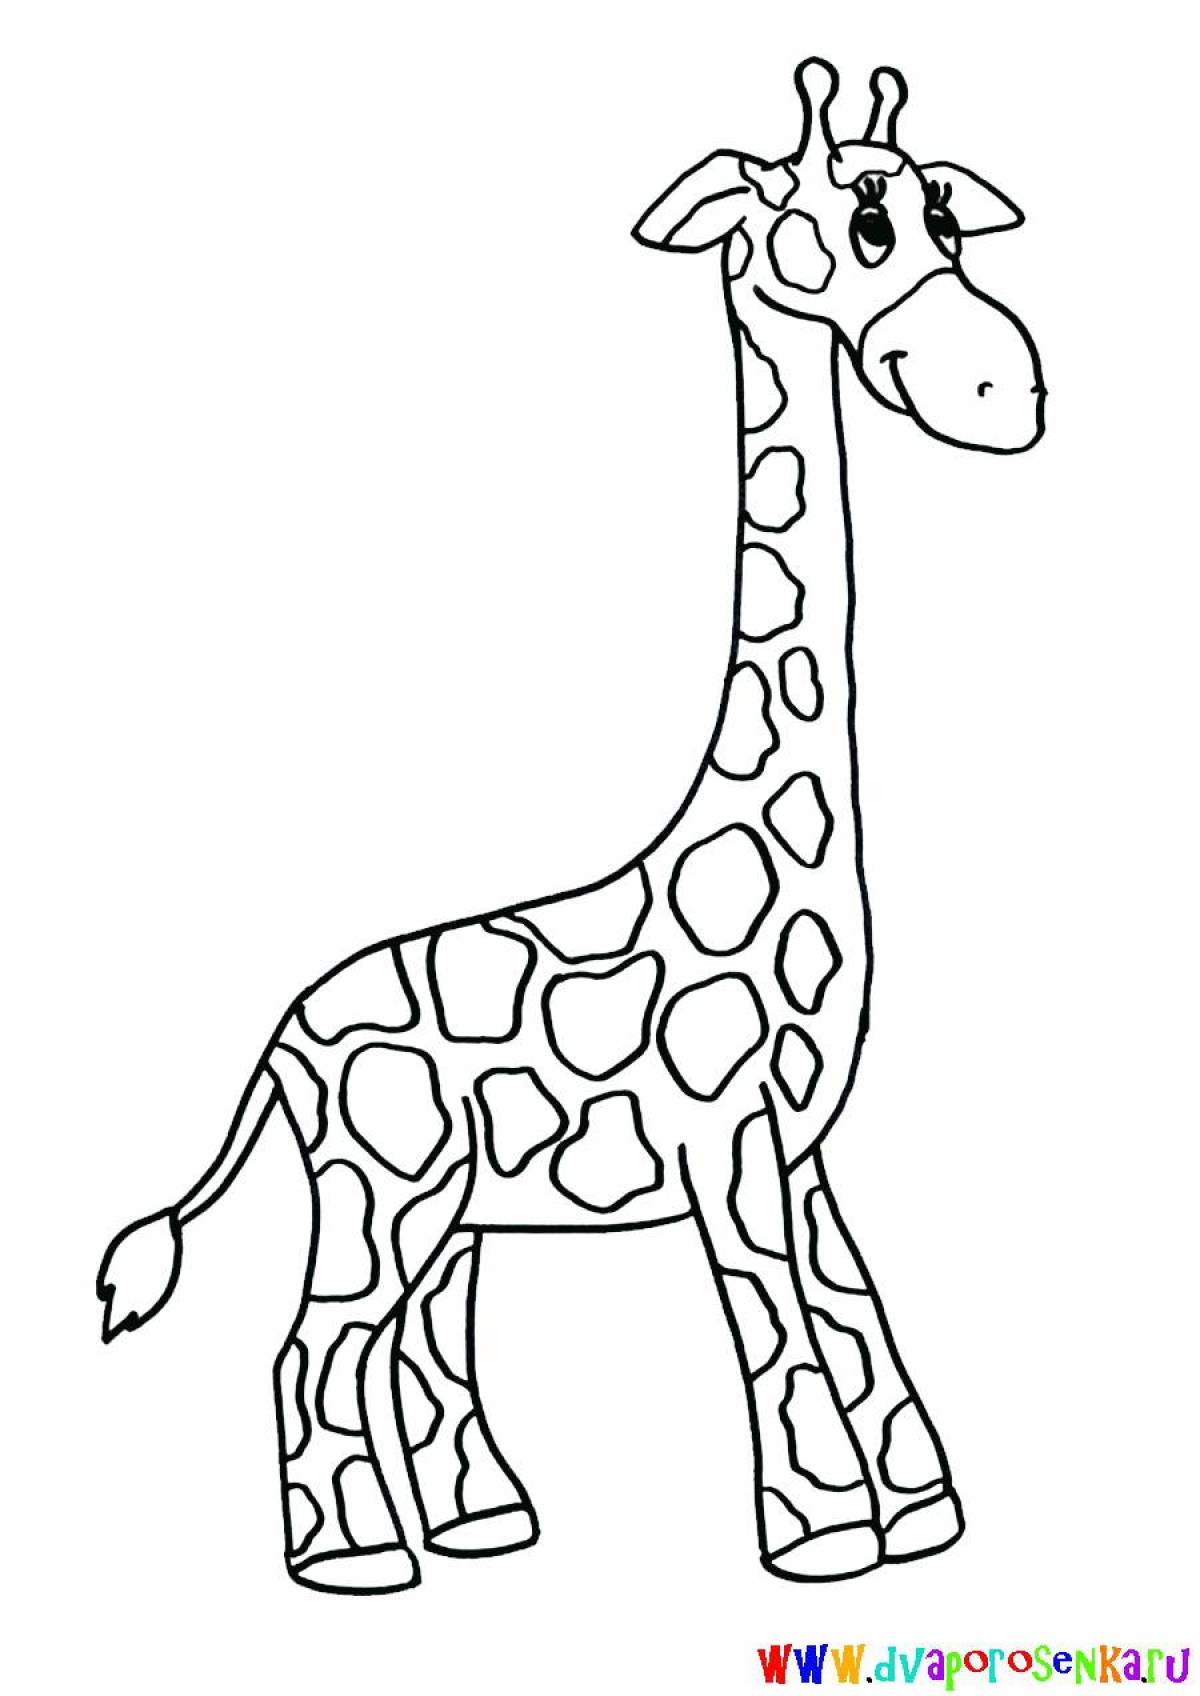 Потрясающие раскраски с жирафами для детей